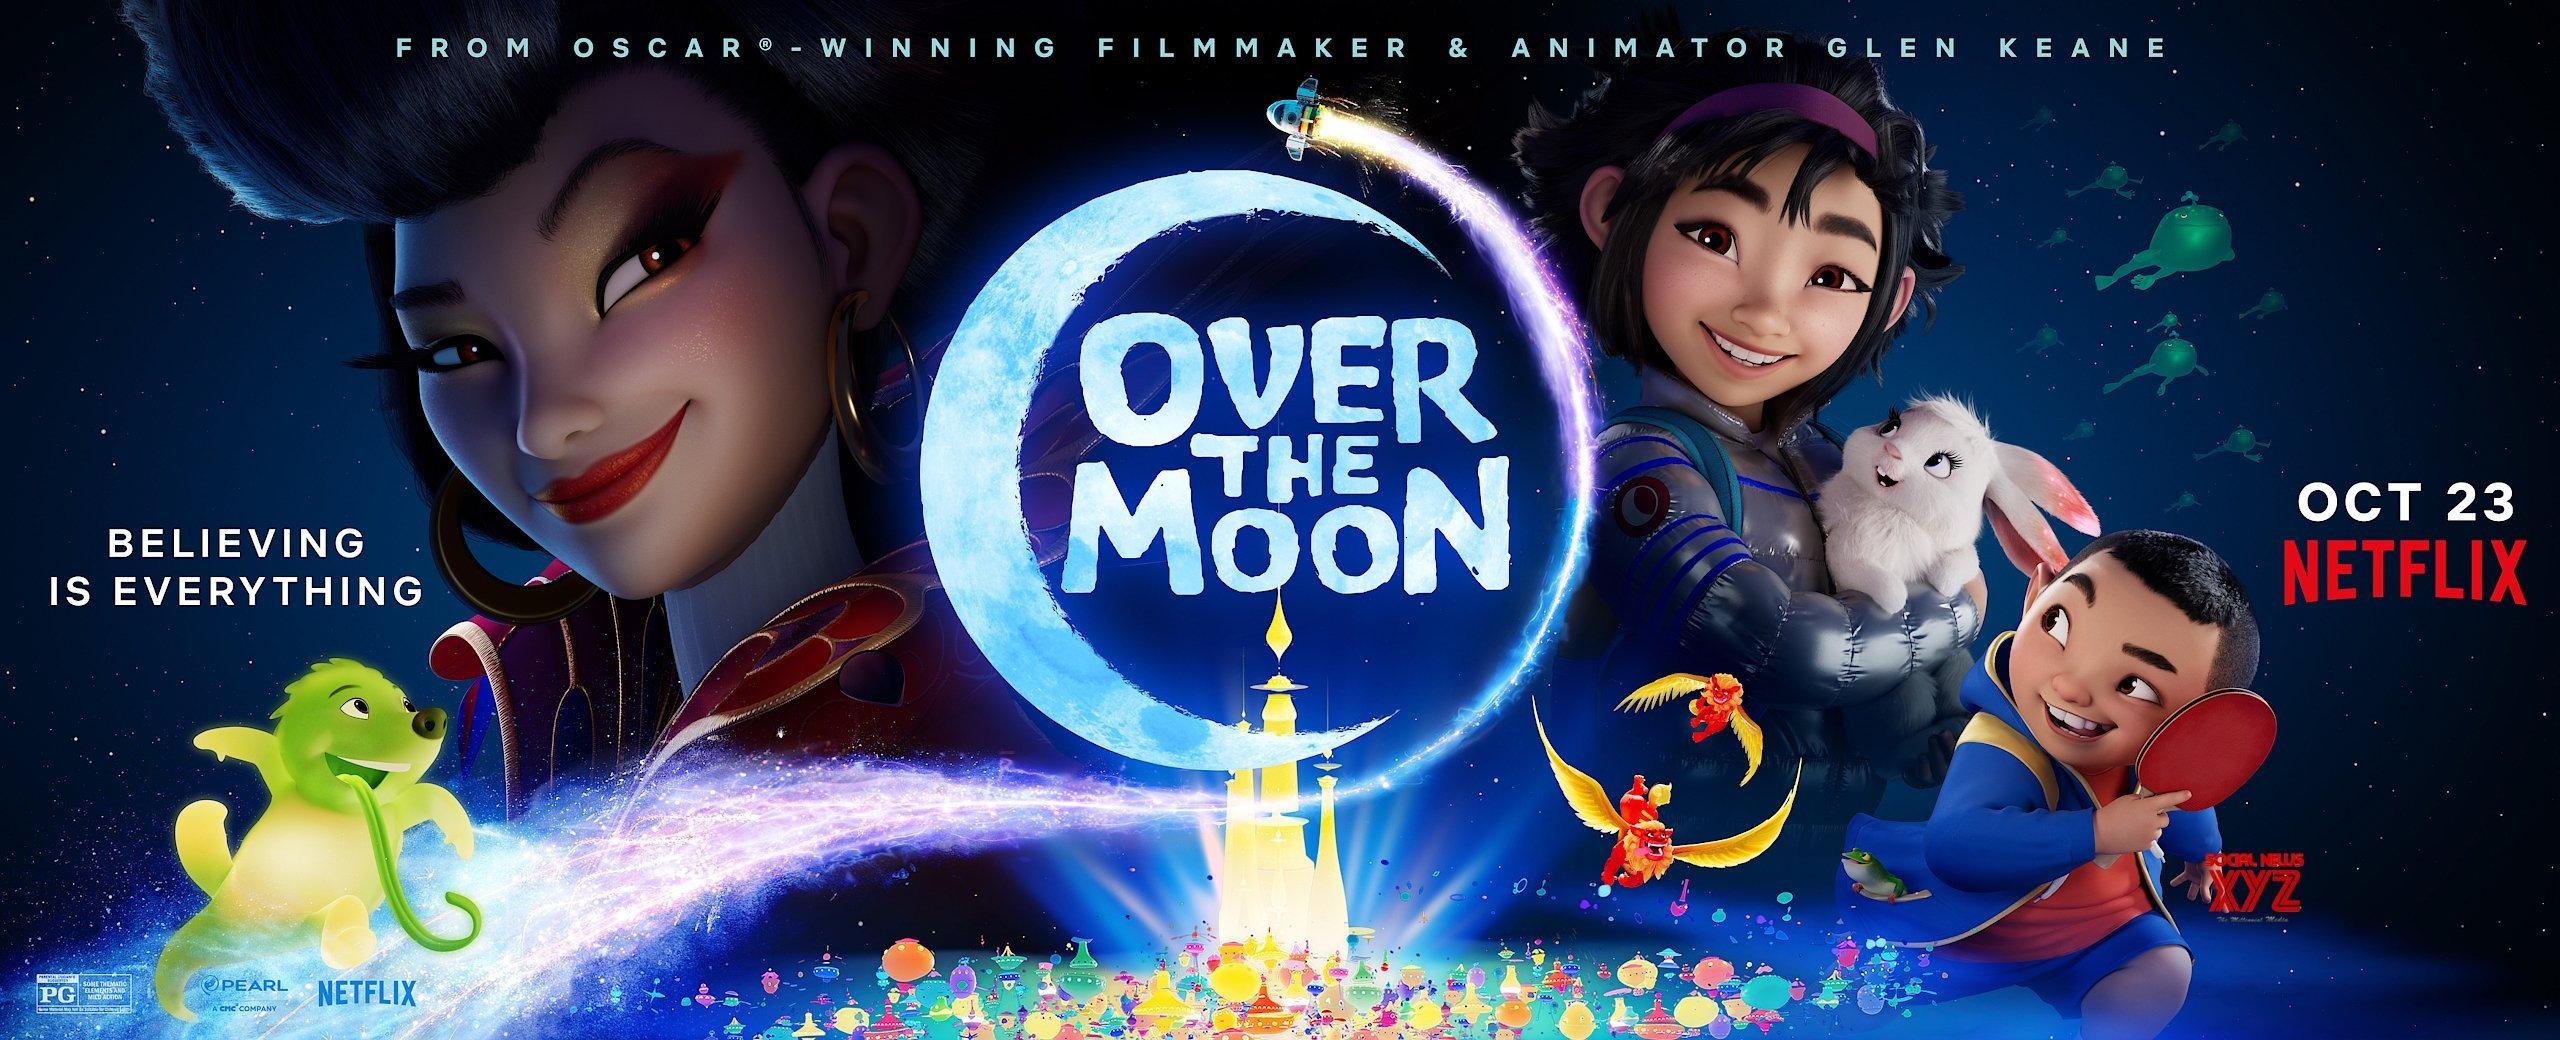 Over the Moon là một bộ phim hoạt hình với chủ đề gia đình lấy cảm hứng từ huyền thoại Hằng Nga của Trung Quốc (Ảnh: Poster Netflix).